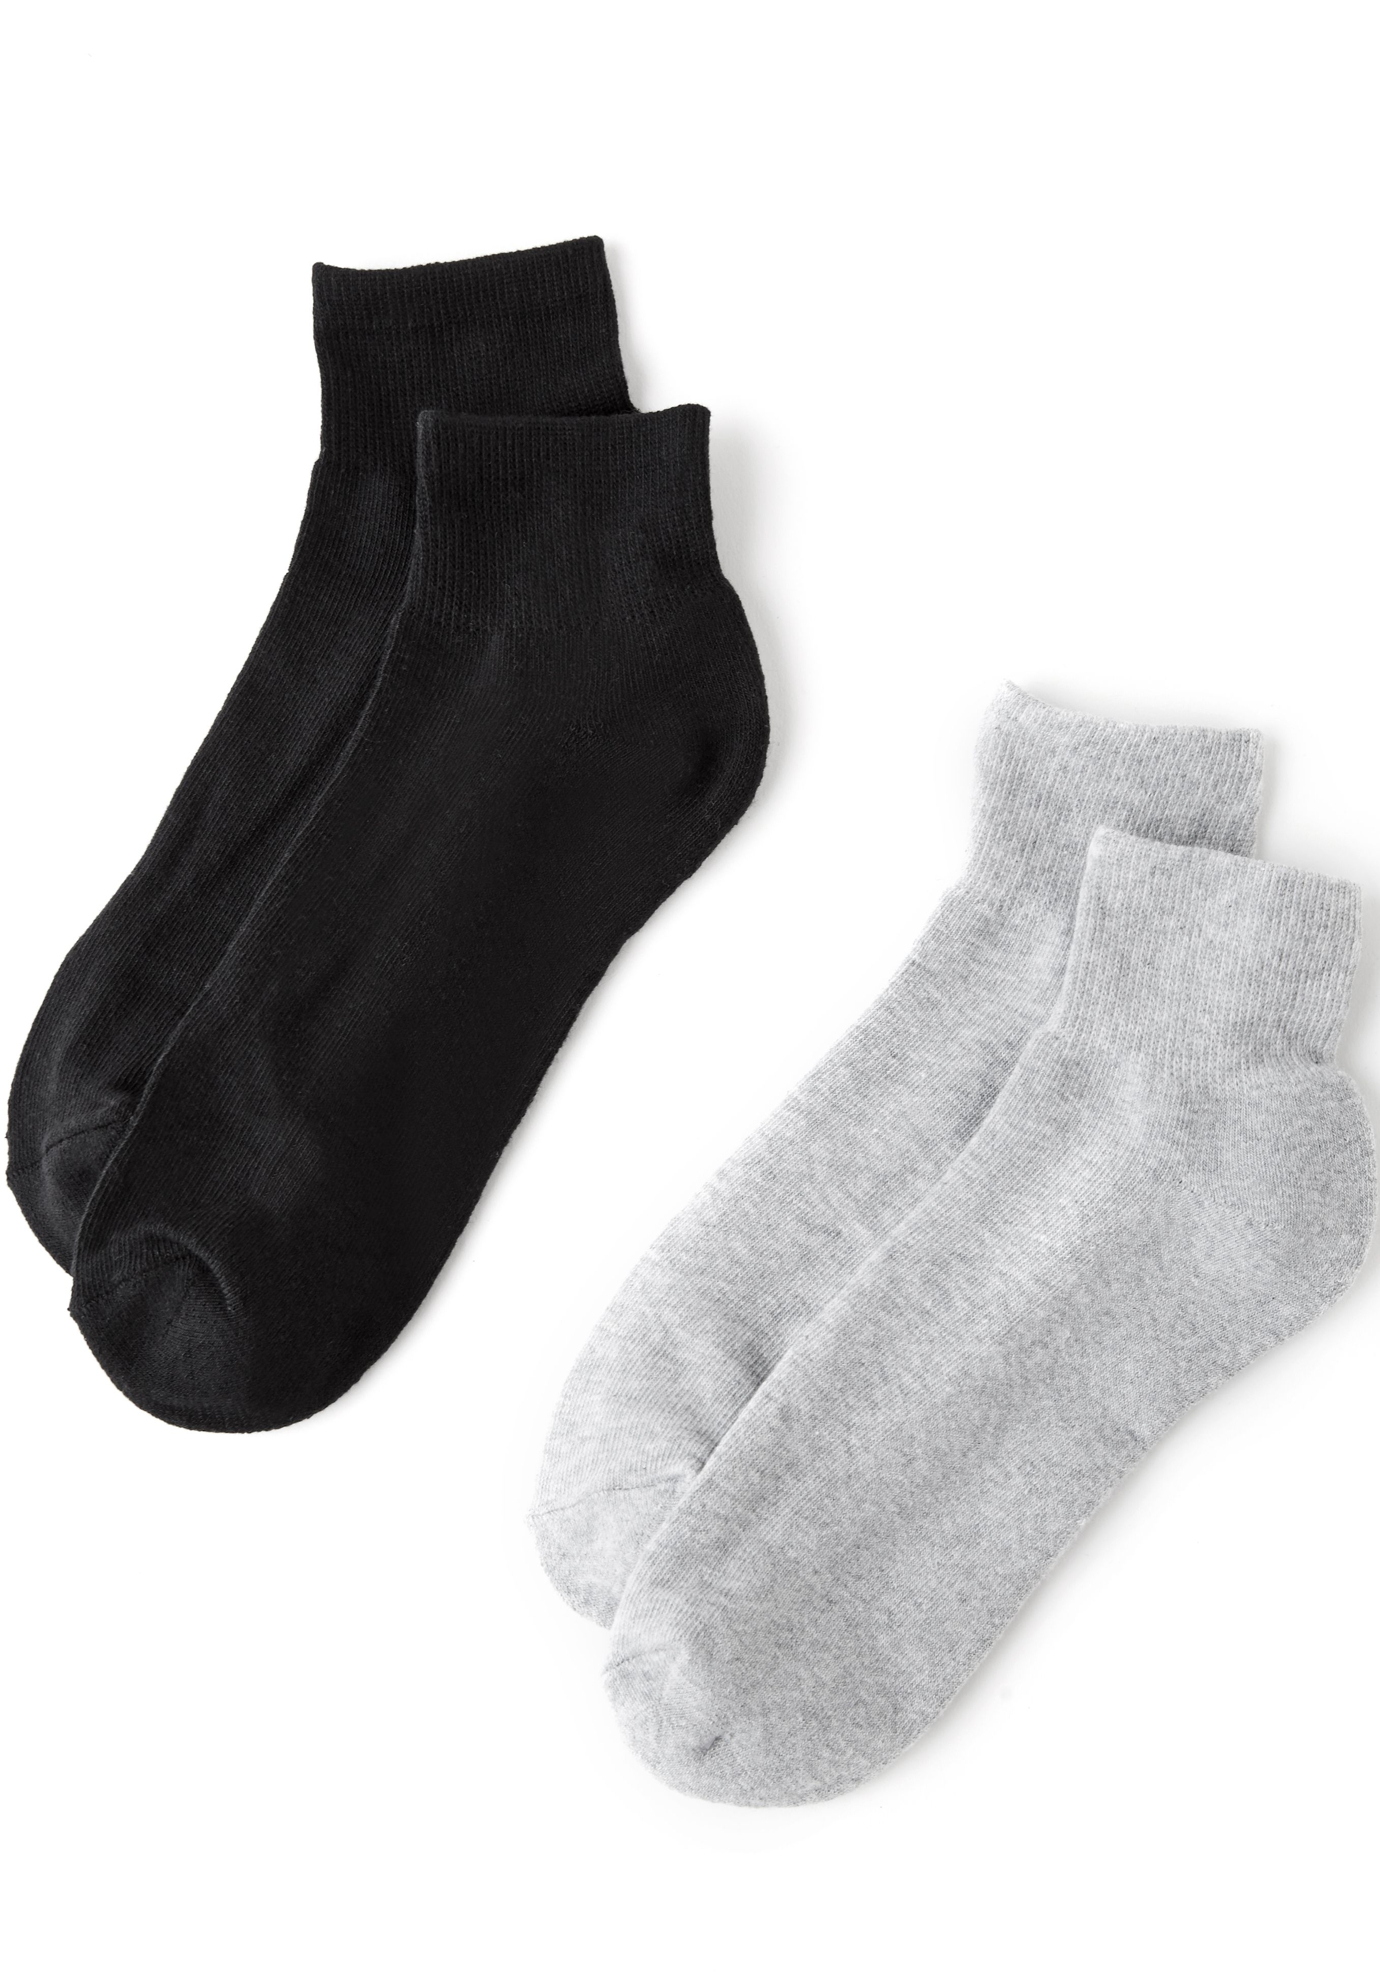 Athletic 2-Pack Ankle Socks | Roaman's